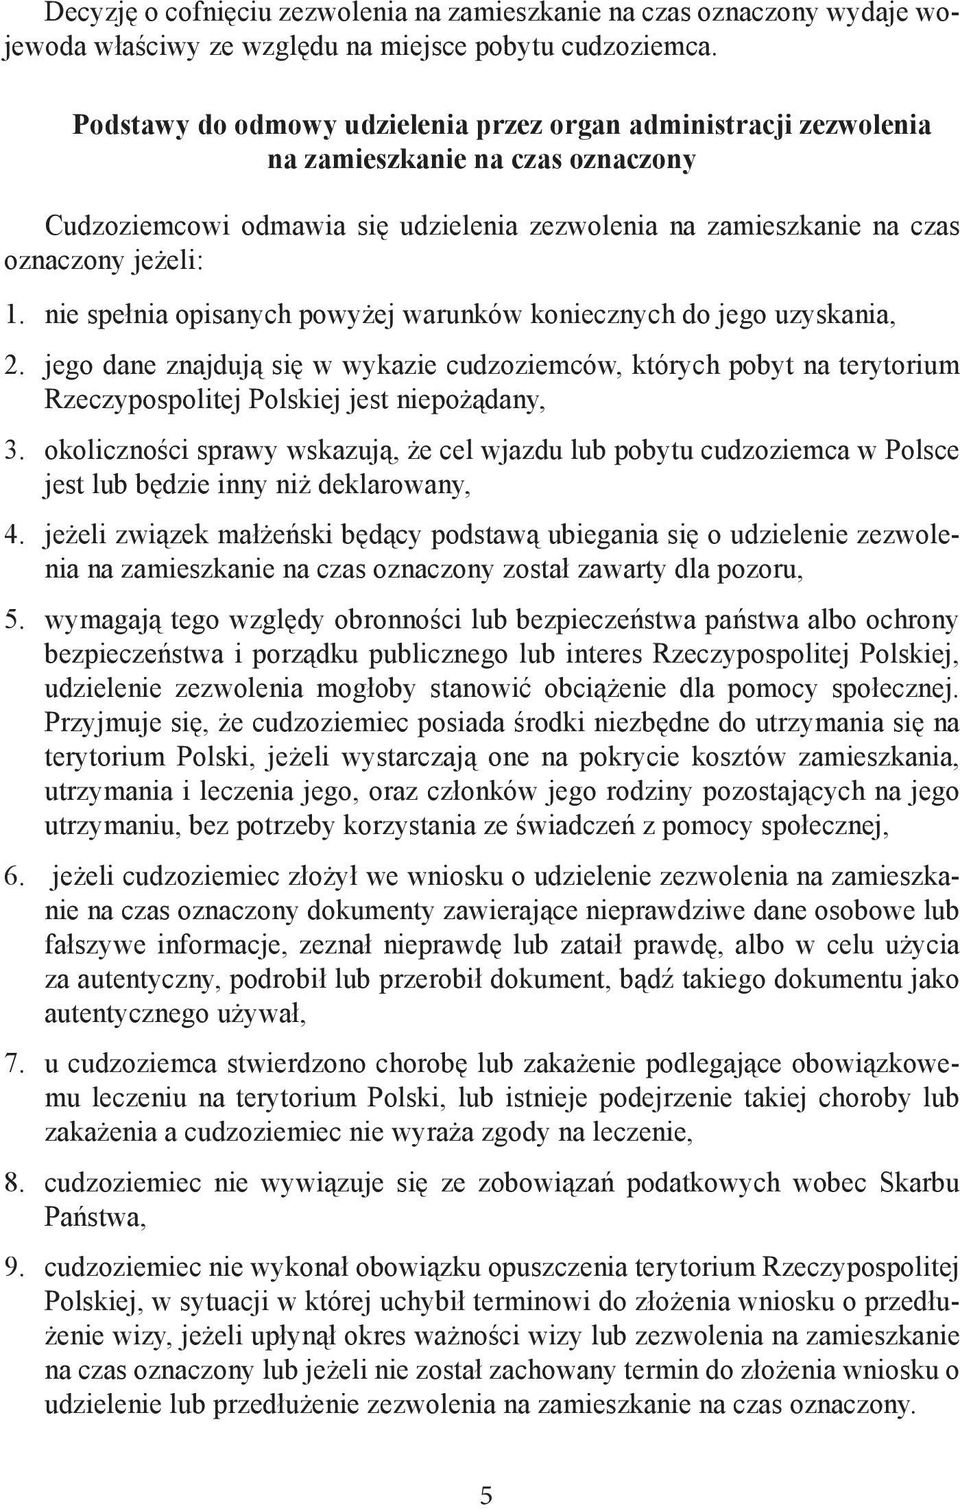 nie spełnia opisanych powyżej warunków koniecznych do jego uzyskania, 2. jego dane znajdują się w wykazie cudzoziemców, których pobyt na terytorium Rzeczypospolitej Polskiej jest niepożądany, 3.